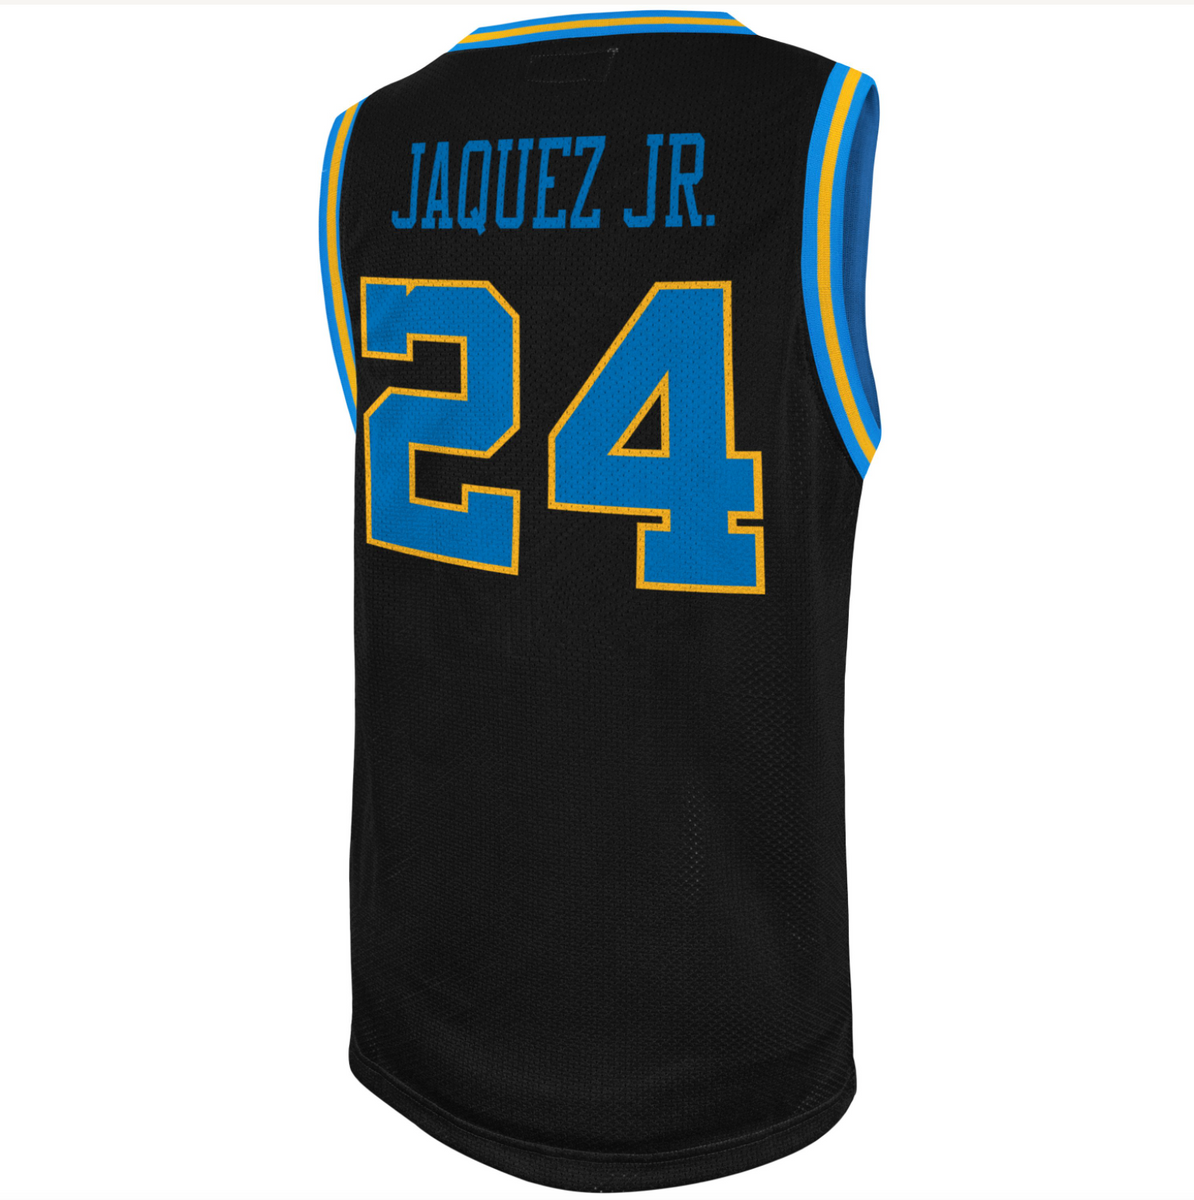 Retro Brand Men's UCLA Bruins Jaime Jaquez Jr. #24 White Replica